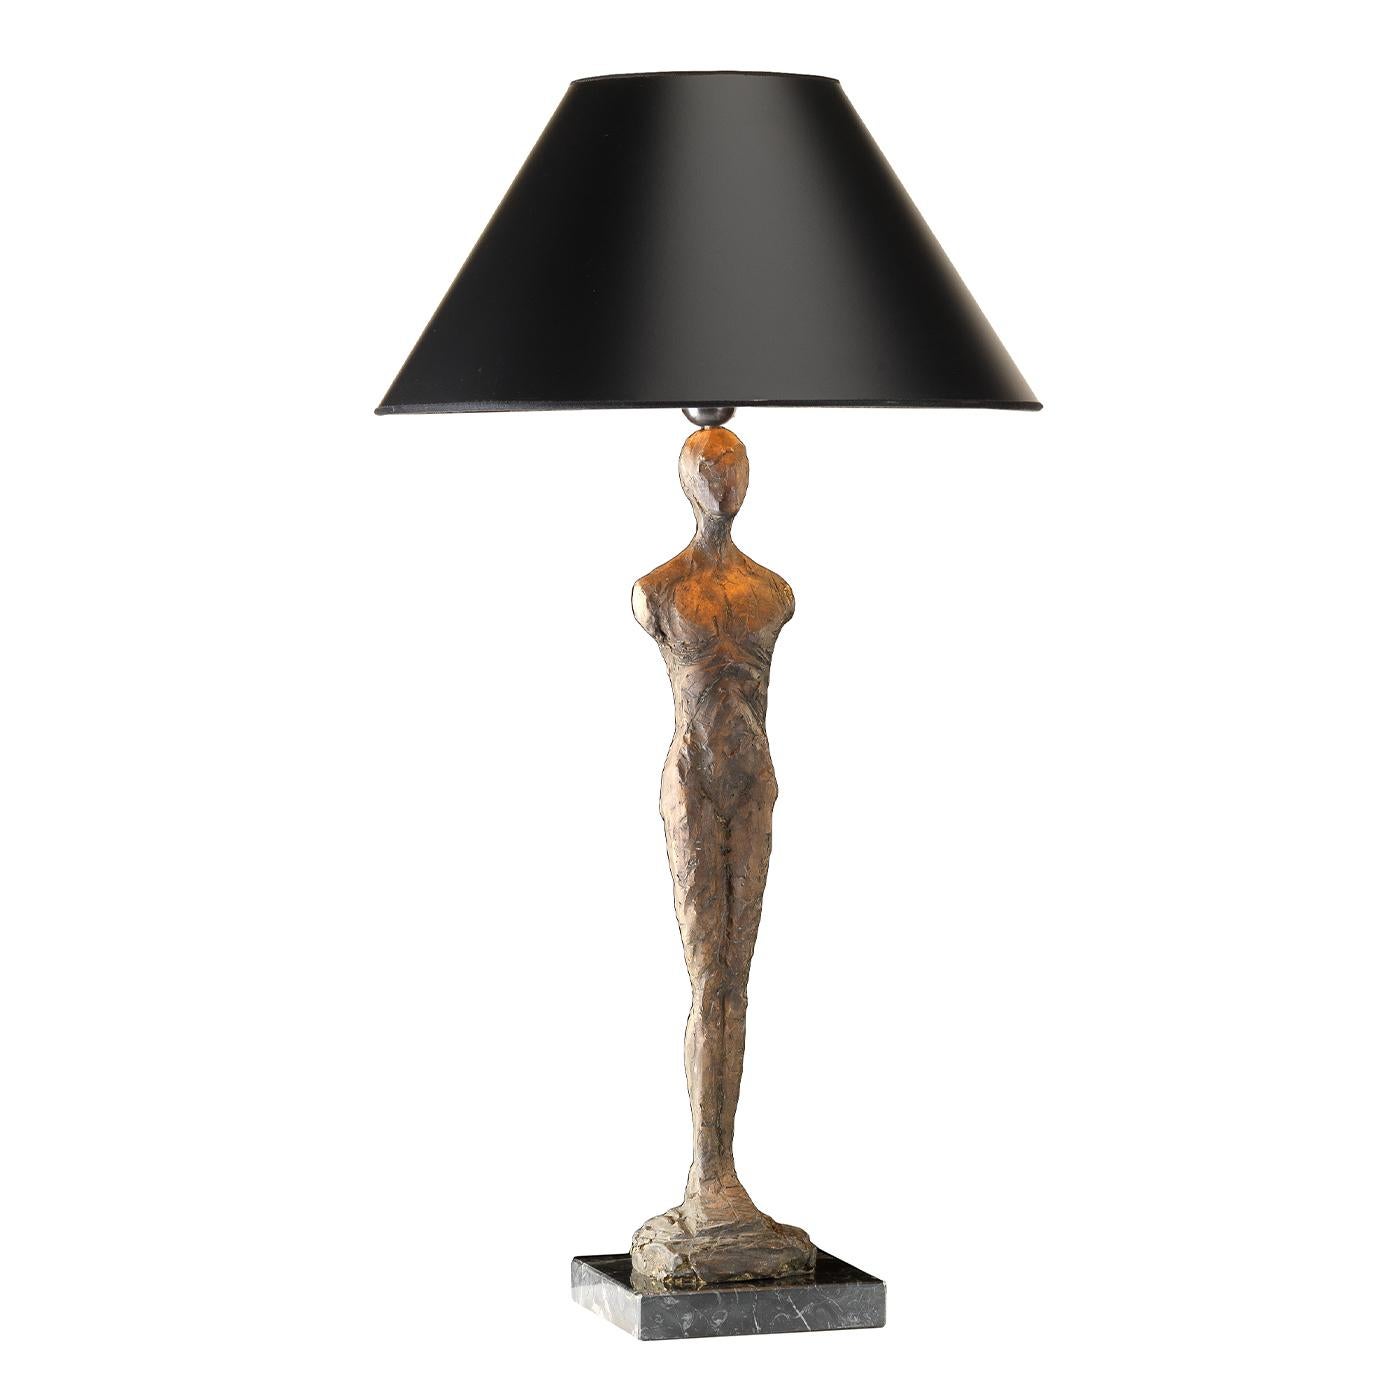 Die Him Lamp vereint Funktionalität und Design in einem. Sie besteht aus einem Marmorsockel, auf dem eine atemberaubende Bronzestatuette in Form einer stilisierten männlichen Figur steht. Dieses Stück sorgt mit seiner starken Präsenz für ein